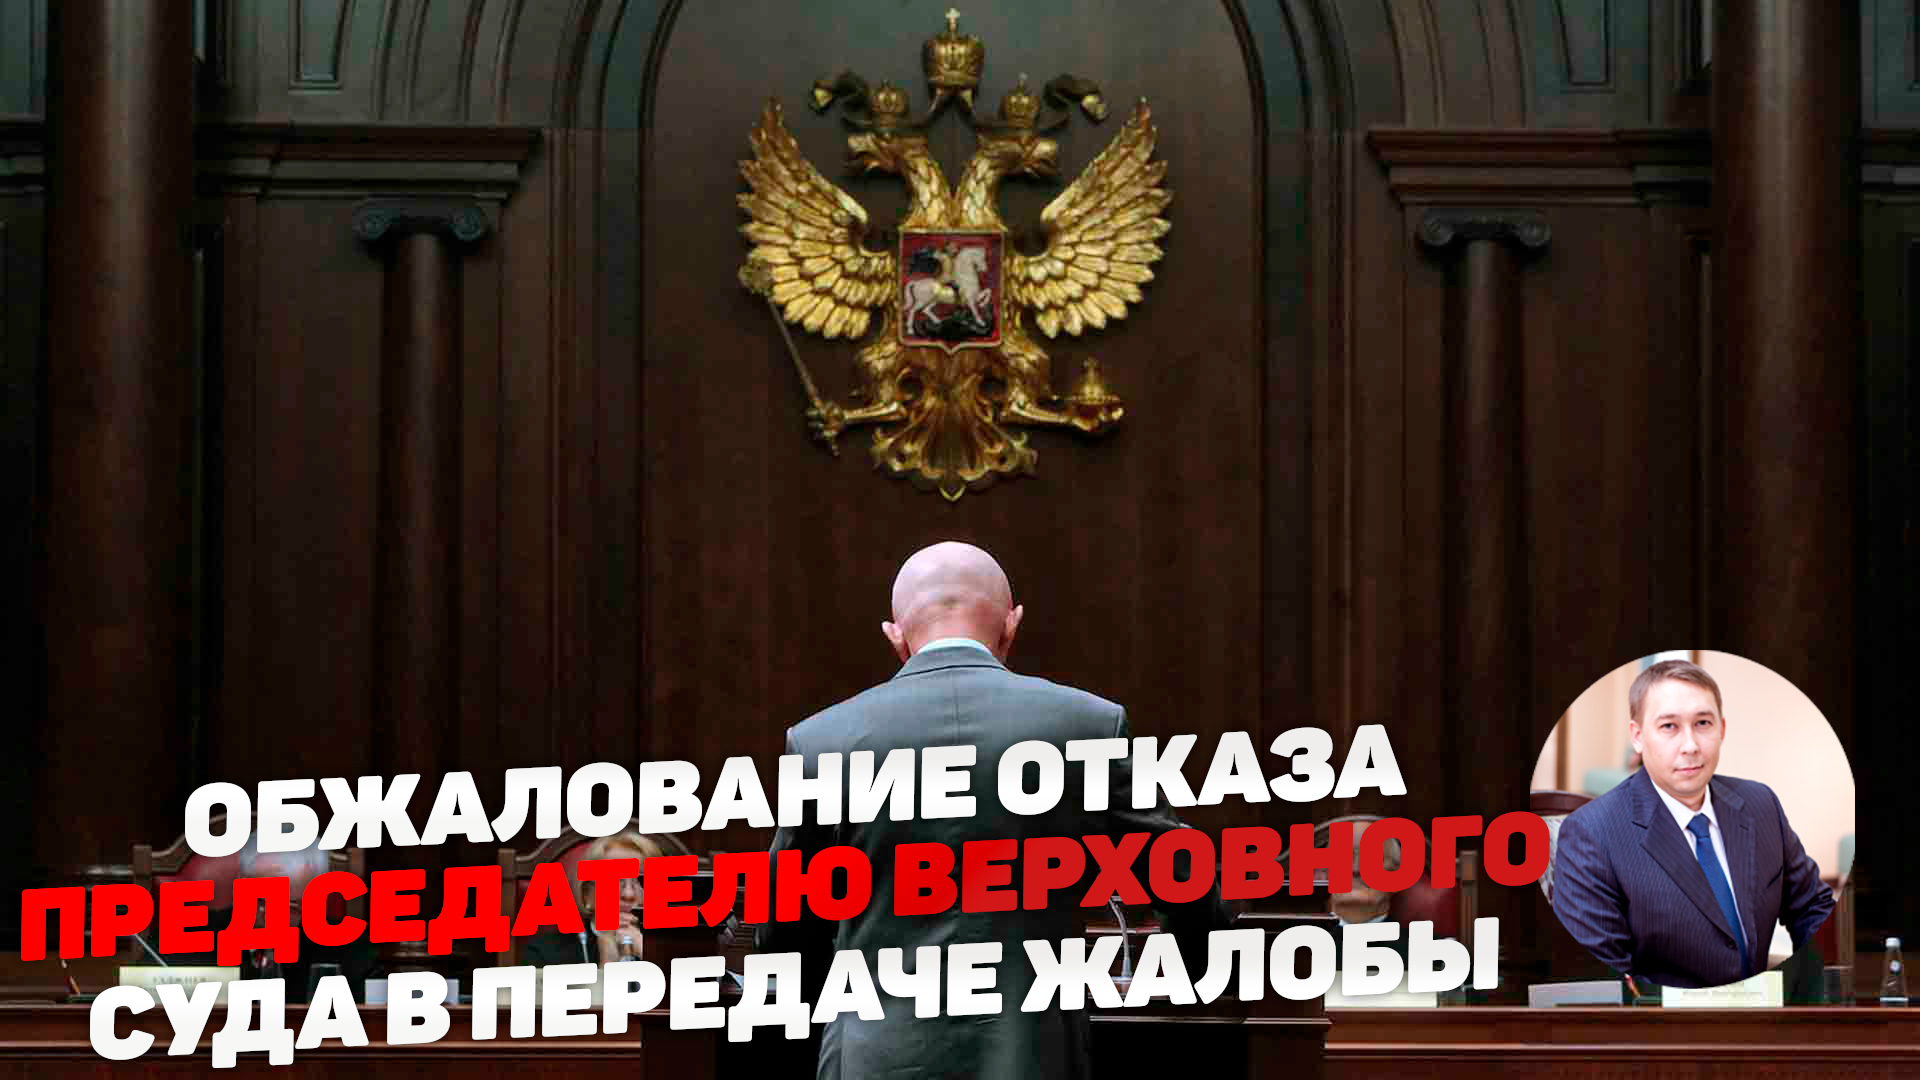 Обжалование председателю верховного суда РФ.